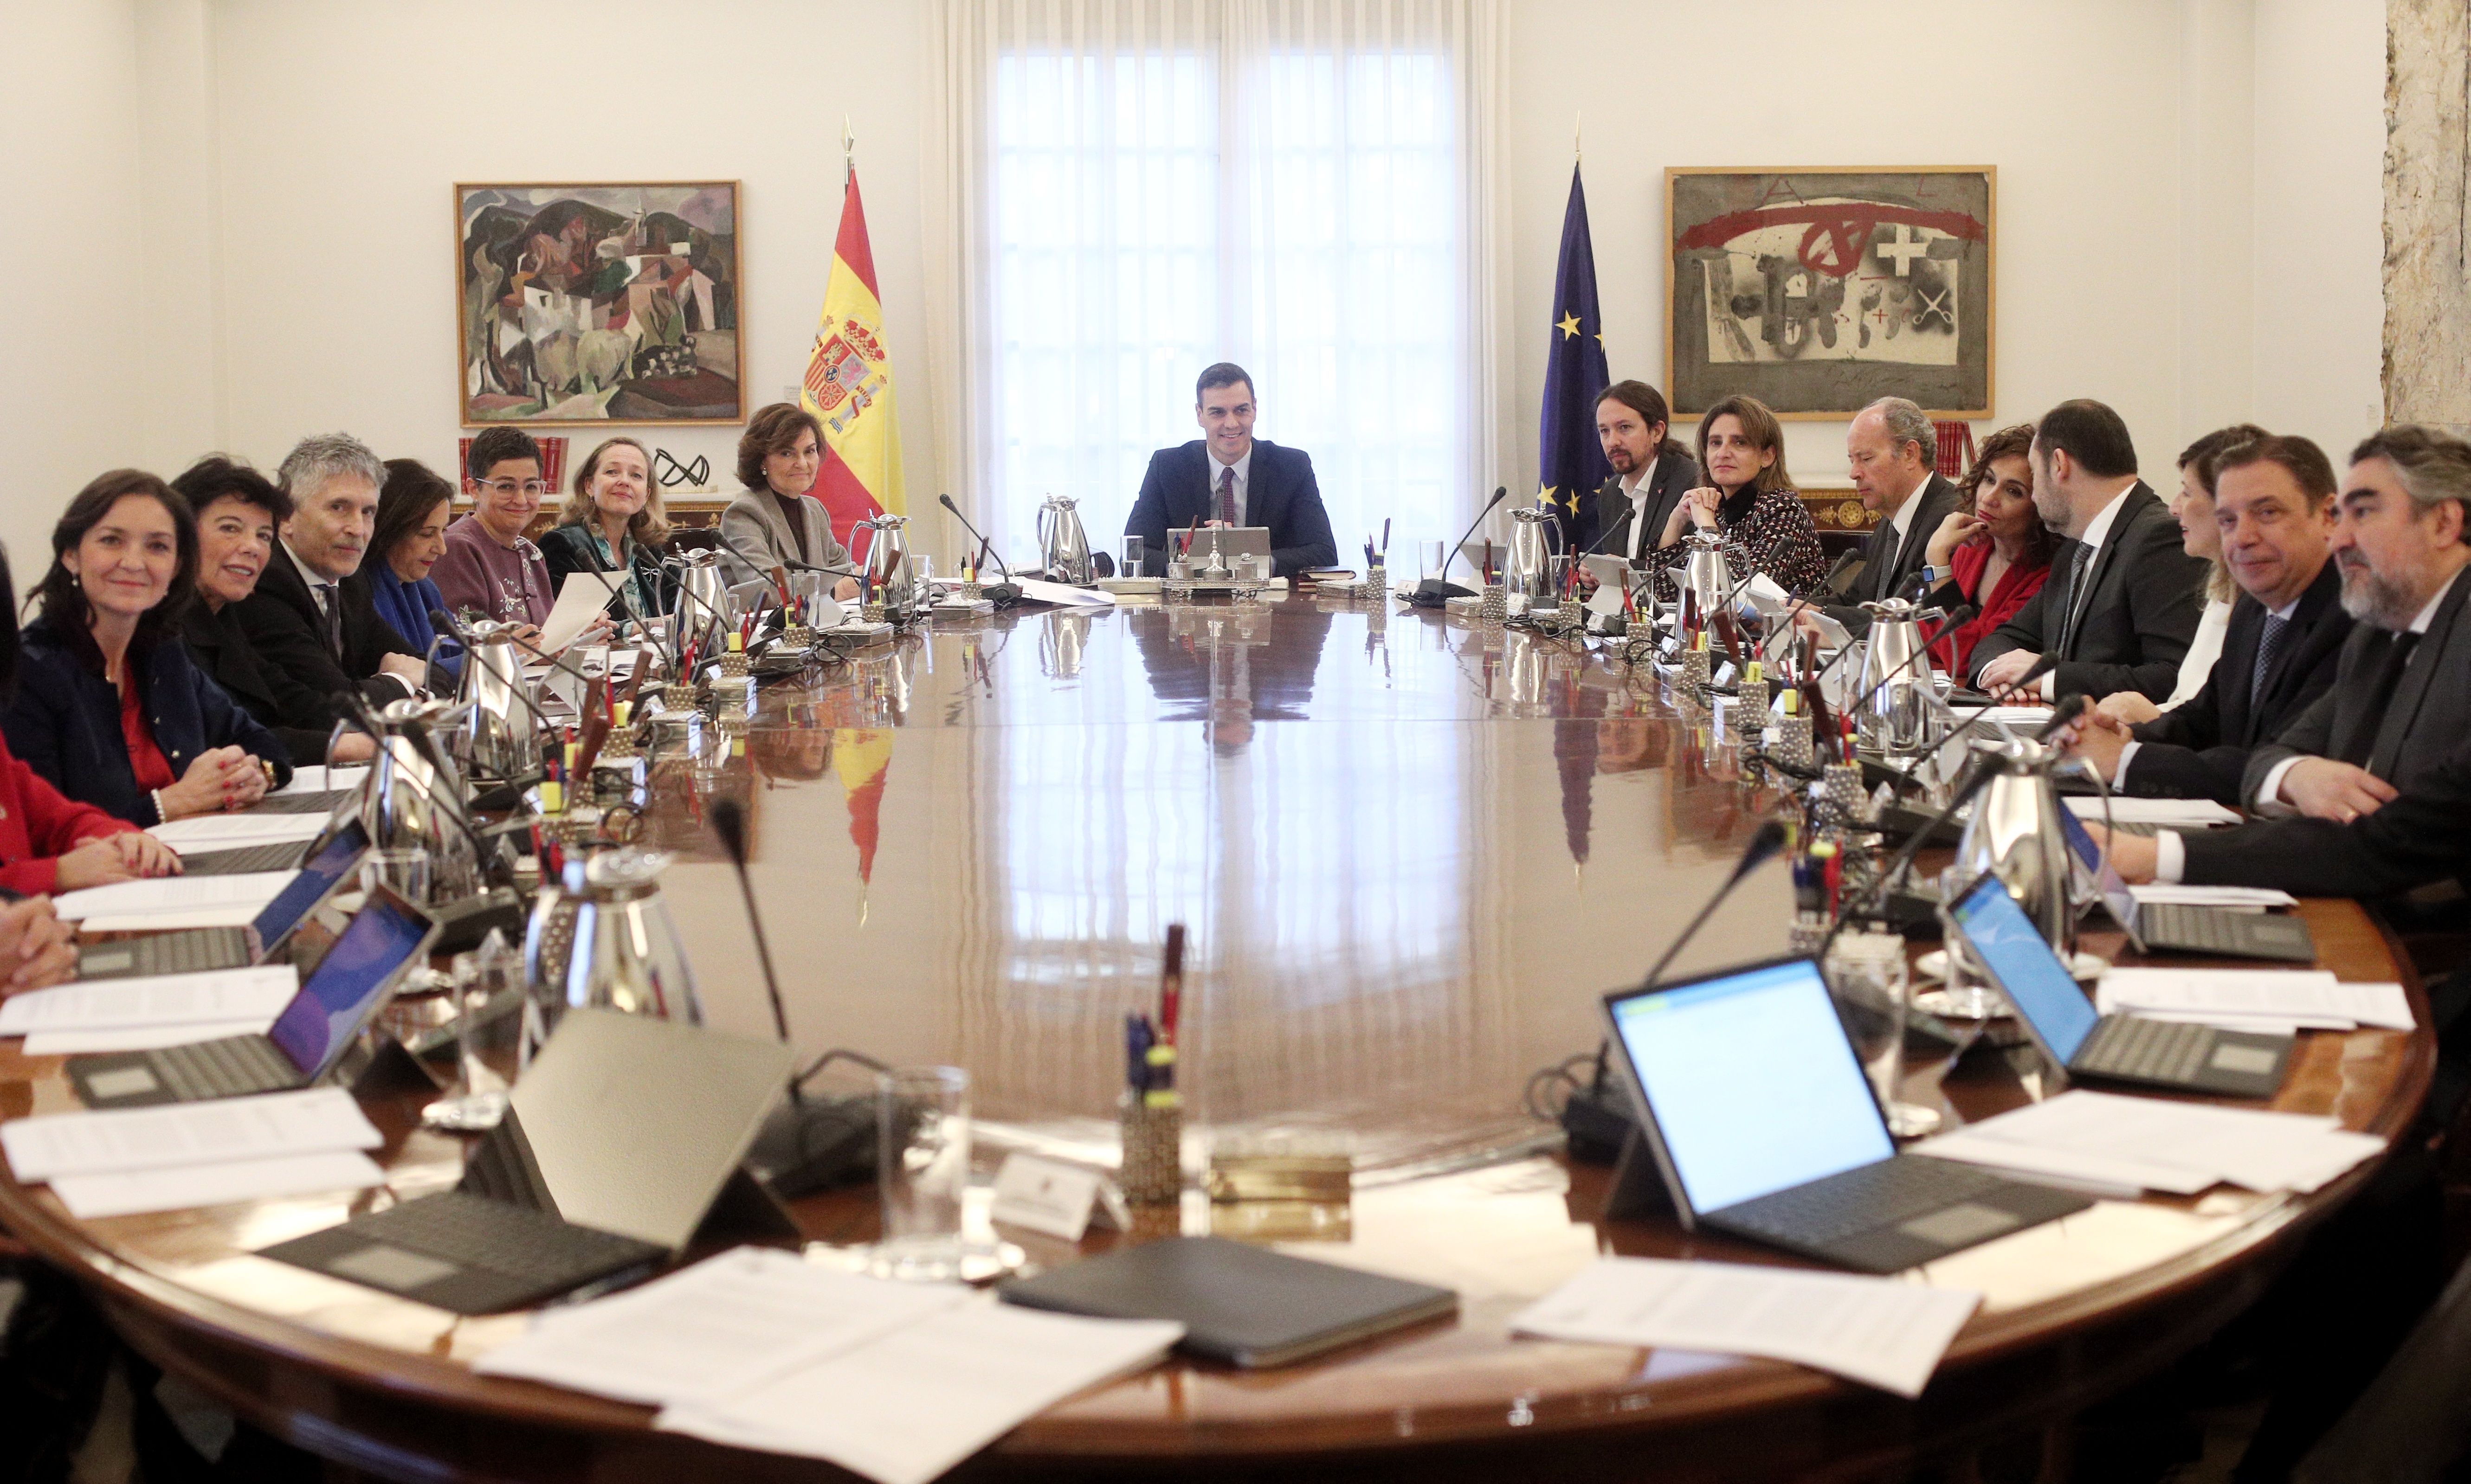 Sala de reuniones de La Moncloa durante el primer consejo de ministros del Gobierno de coalición del PSOE y UP. Las pensiones suben 0,9%  pero UDP pide asegurar sostenibilidad y mantenimiento poder adquisitivo